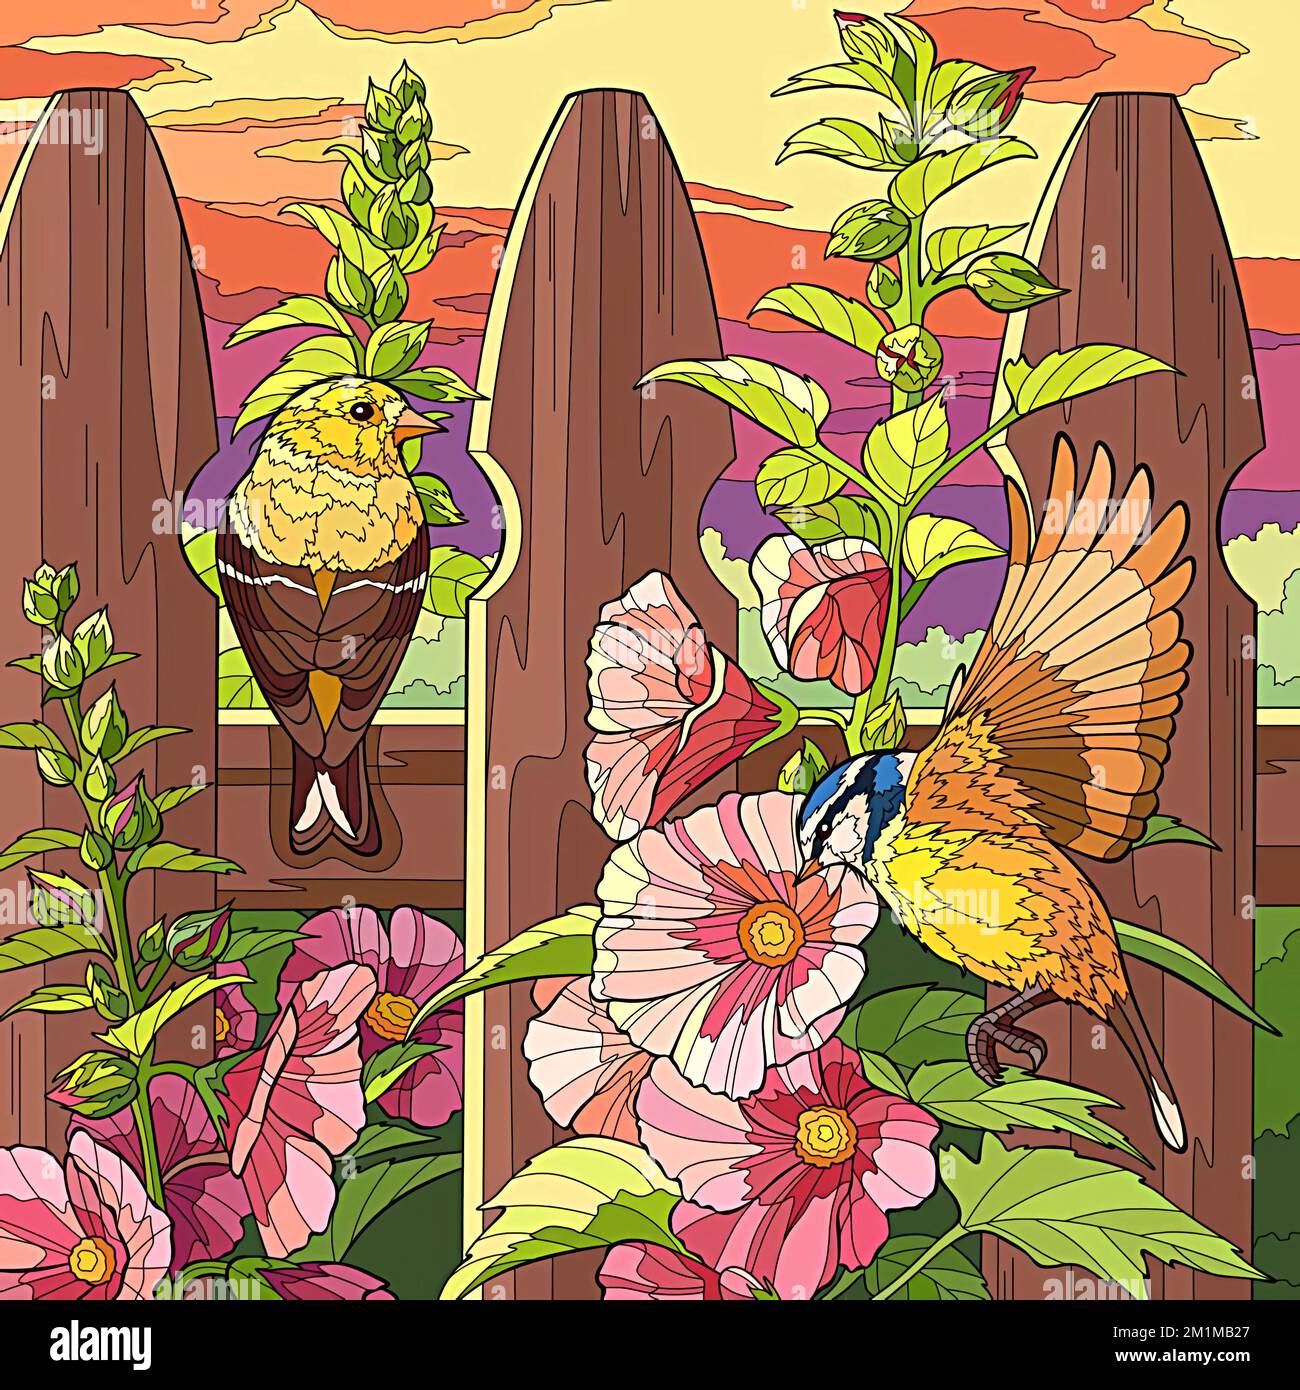 Abbildung von zwei Vögeln und Blumen auf einem Holzzaun Stockfoto